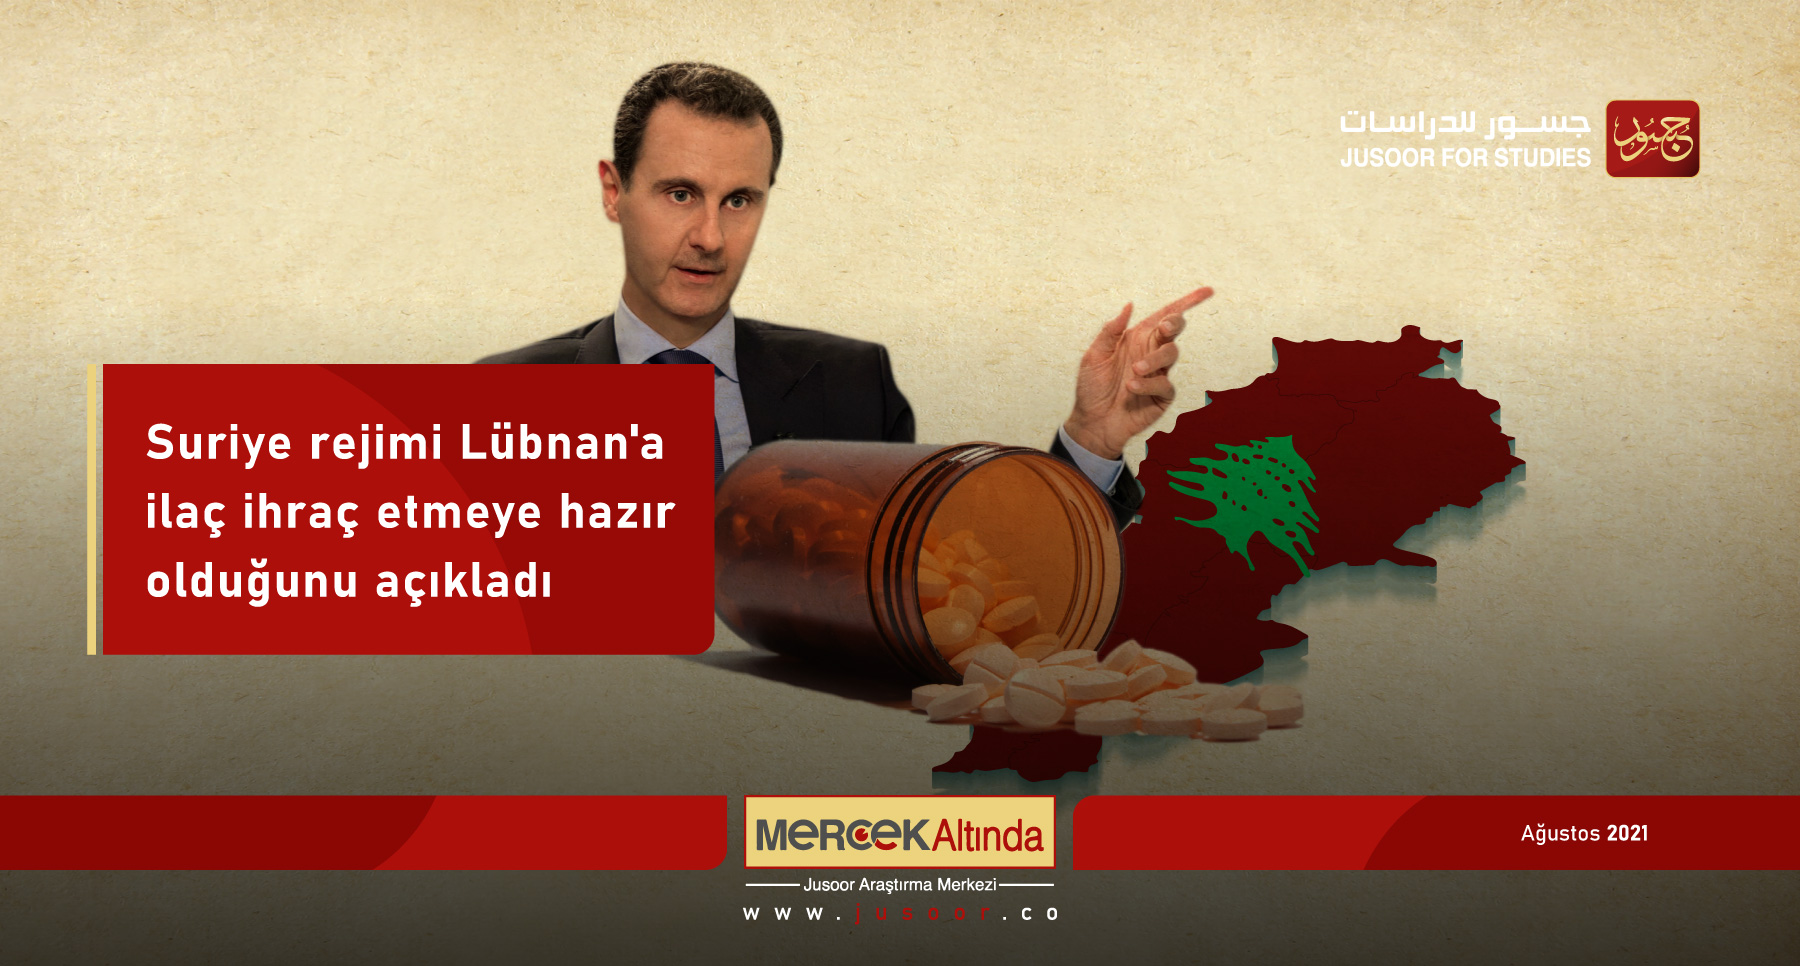 Suriye rejimi Lübnan'a ilaç ihraç etmeye hazır olduğunu açıkladı